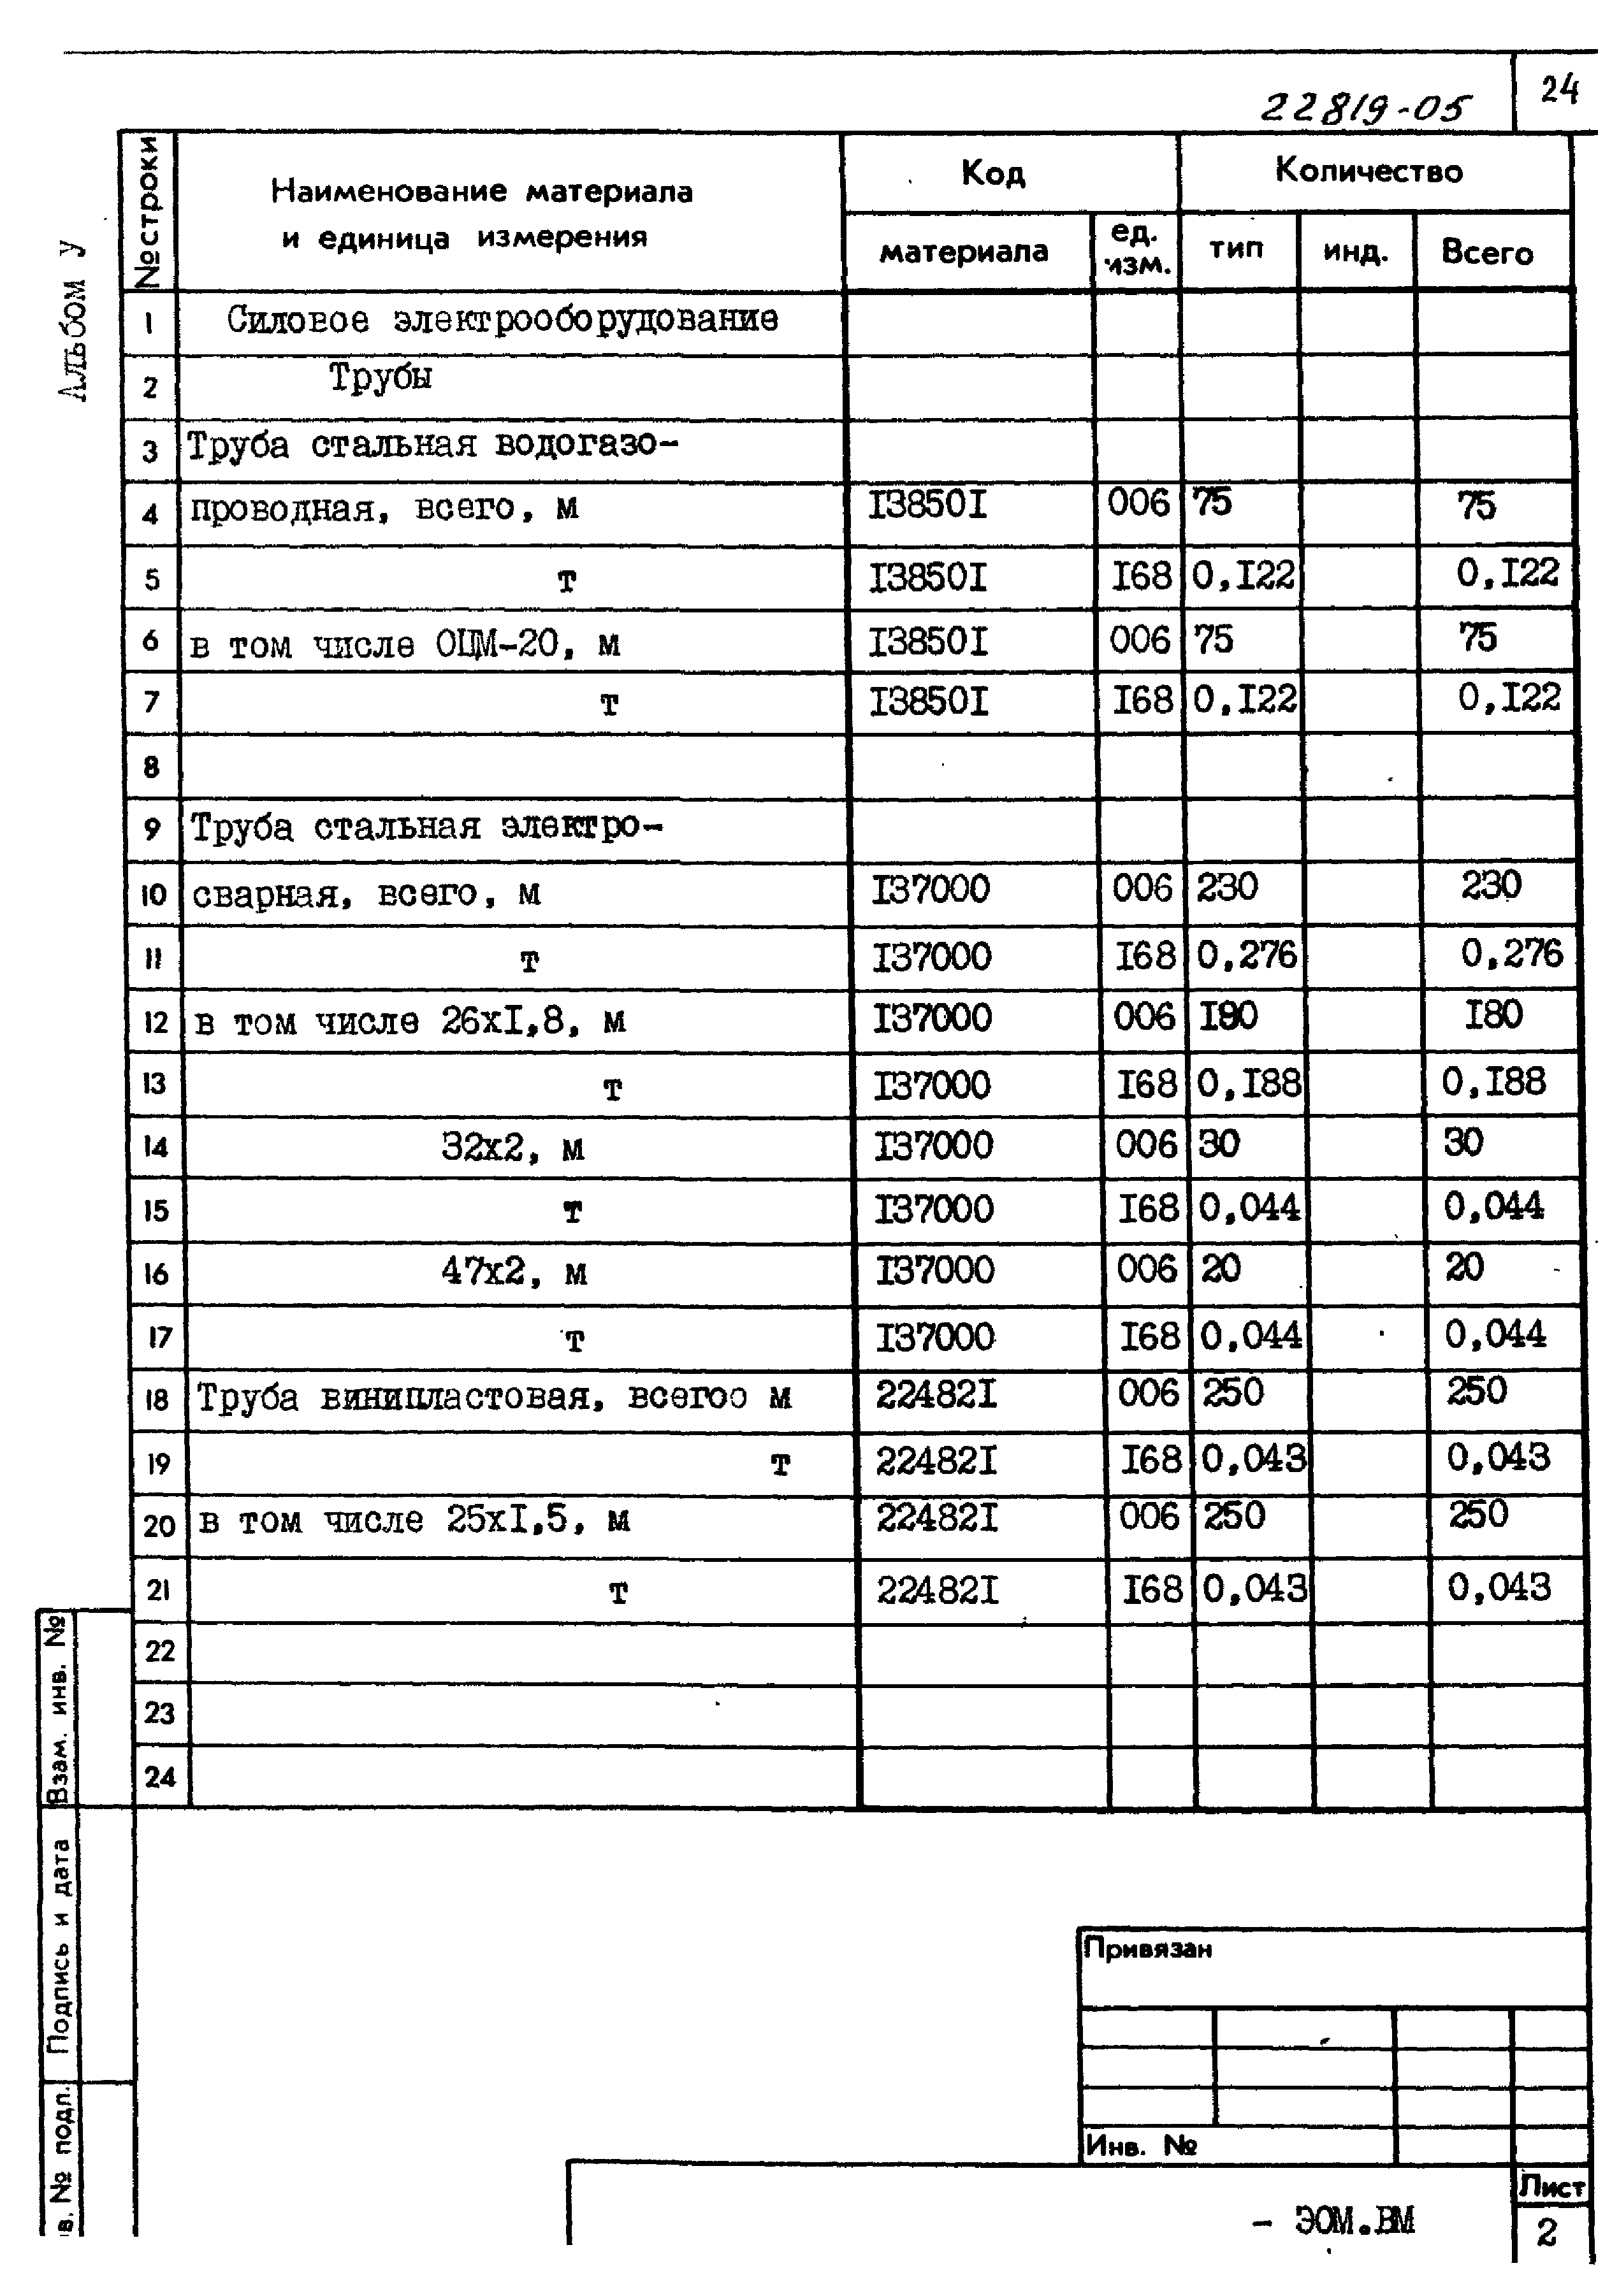 Типовой проект 211-1-400.87